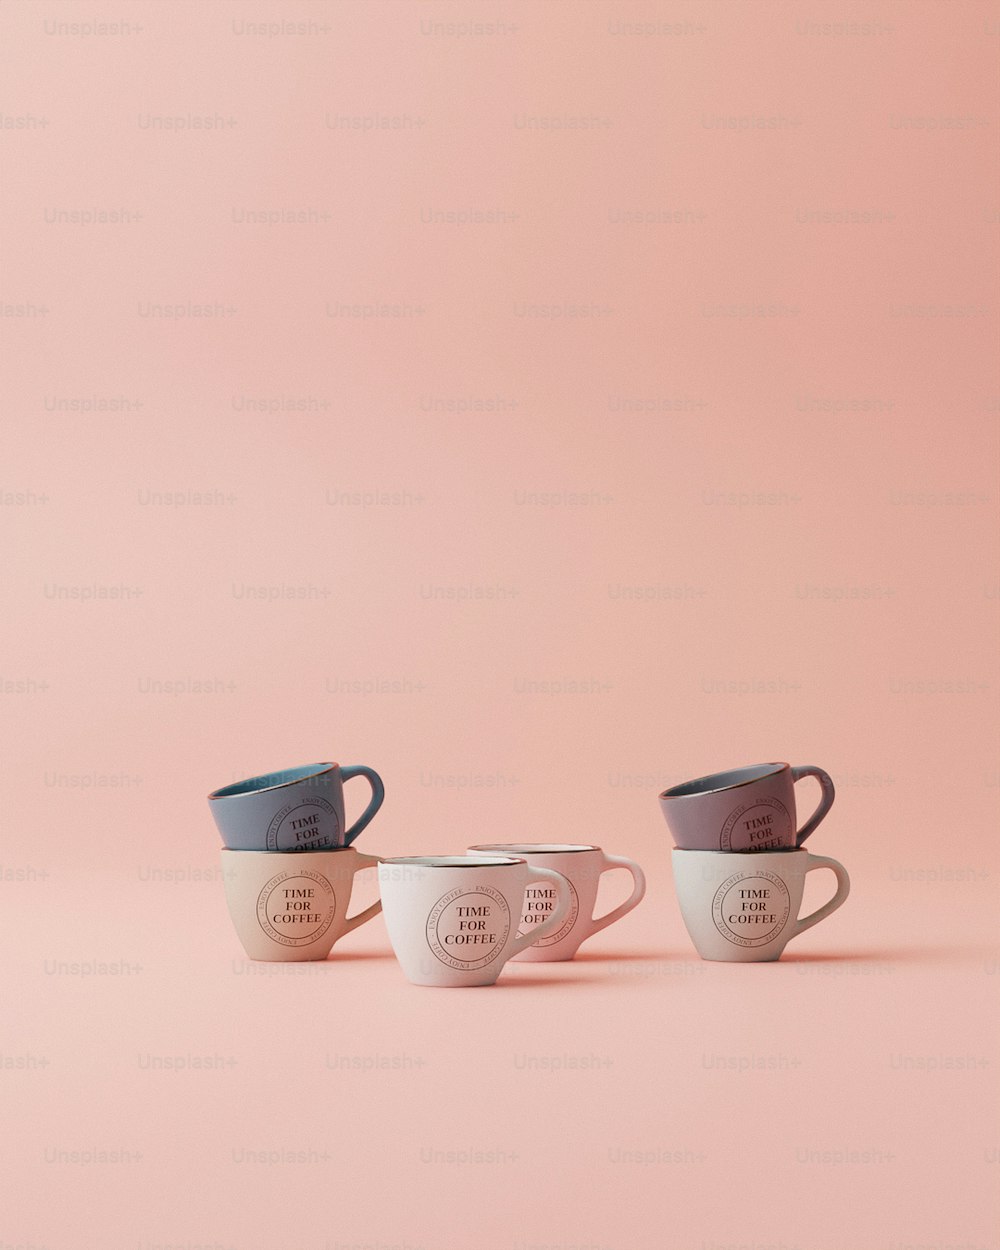 분홍색 배경에 나란히 앉아 있는 세 개의 커피잔